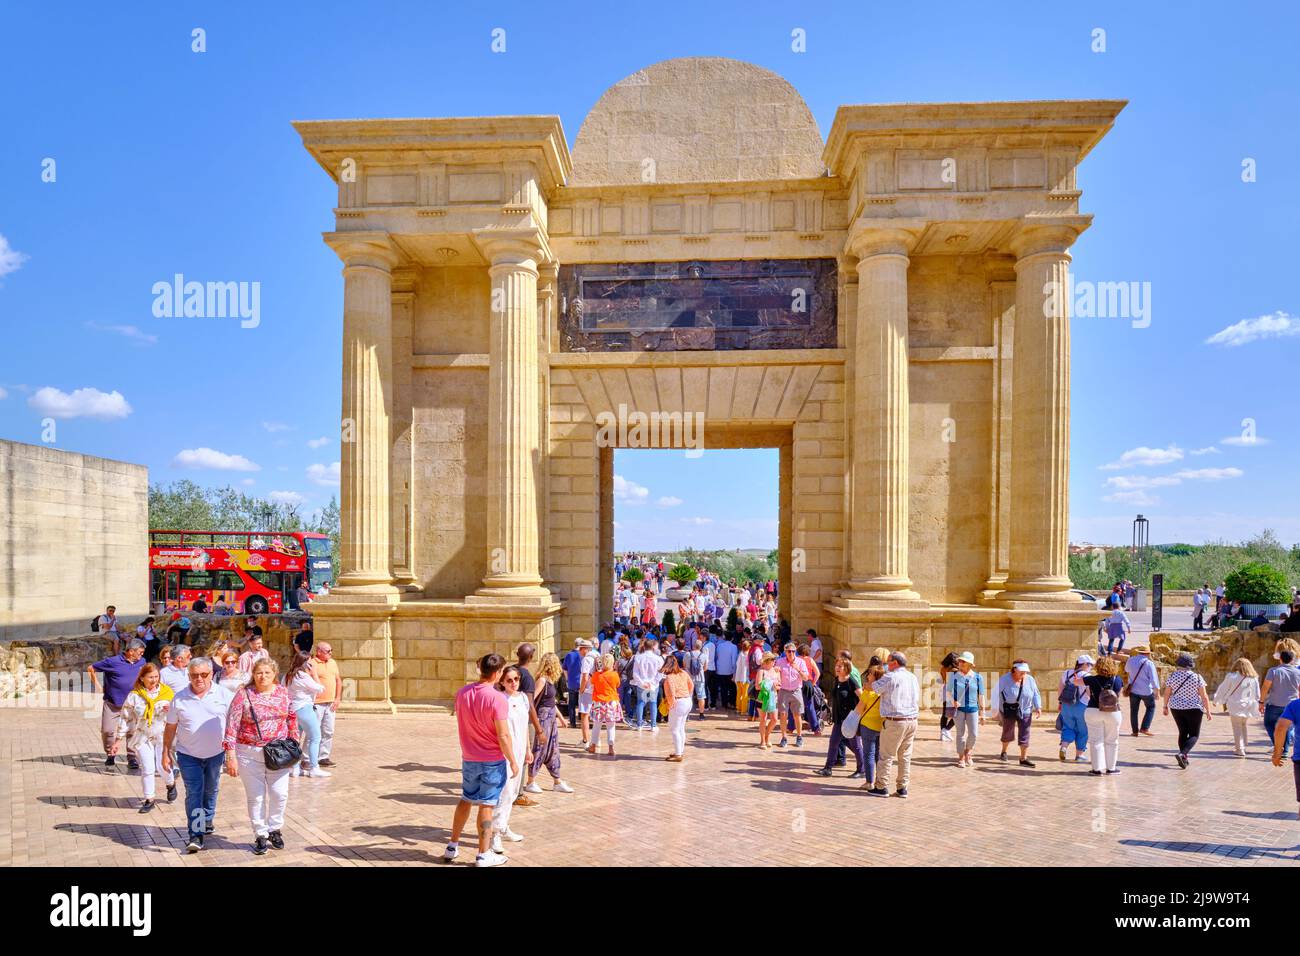 Puerta del Puente que da acceso al puente romano de Córdoba, declarado Patrimonio de la Humanidad por la UNESCO. Andalucía, España Foto de stock